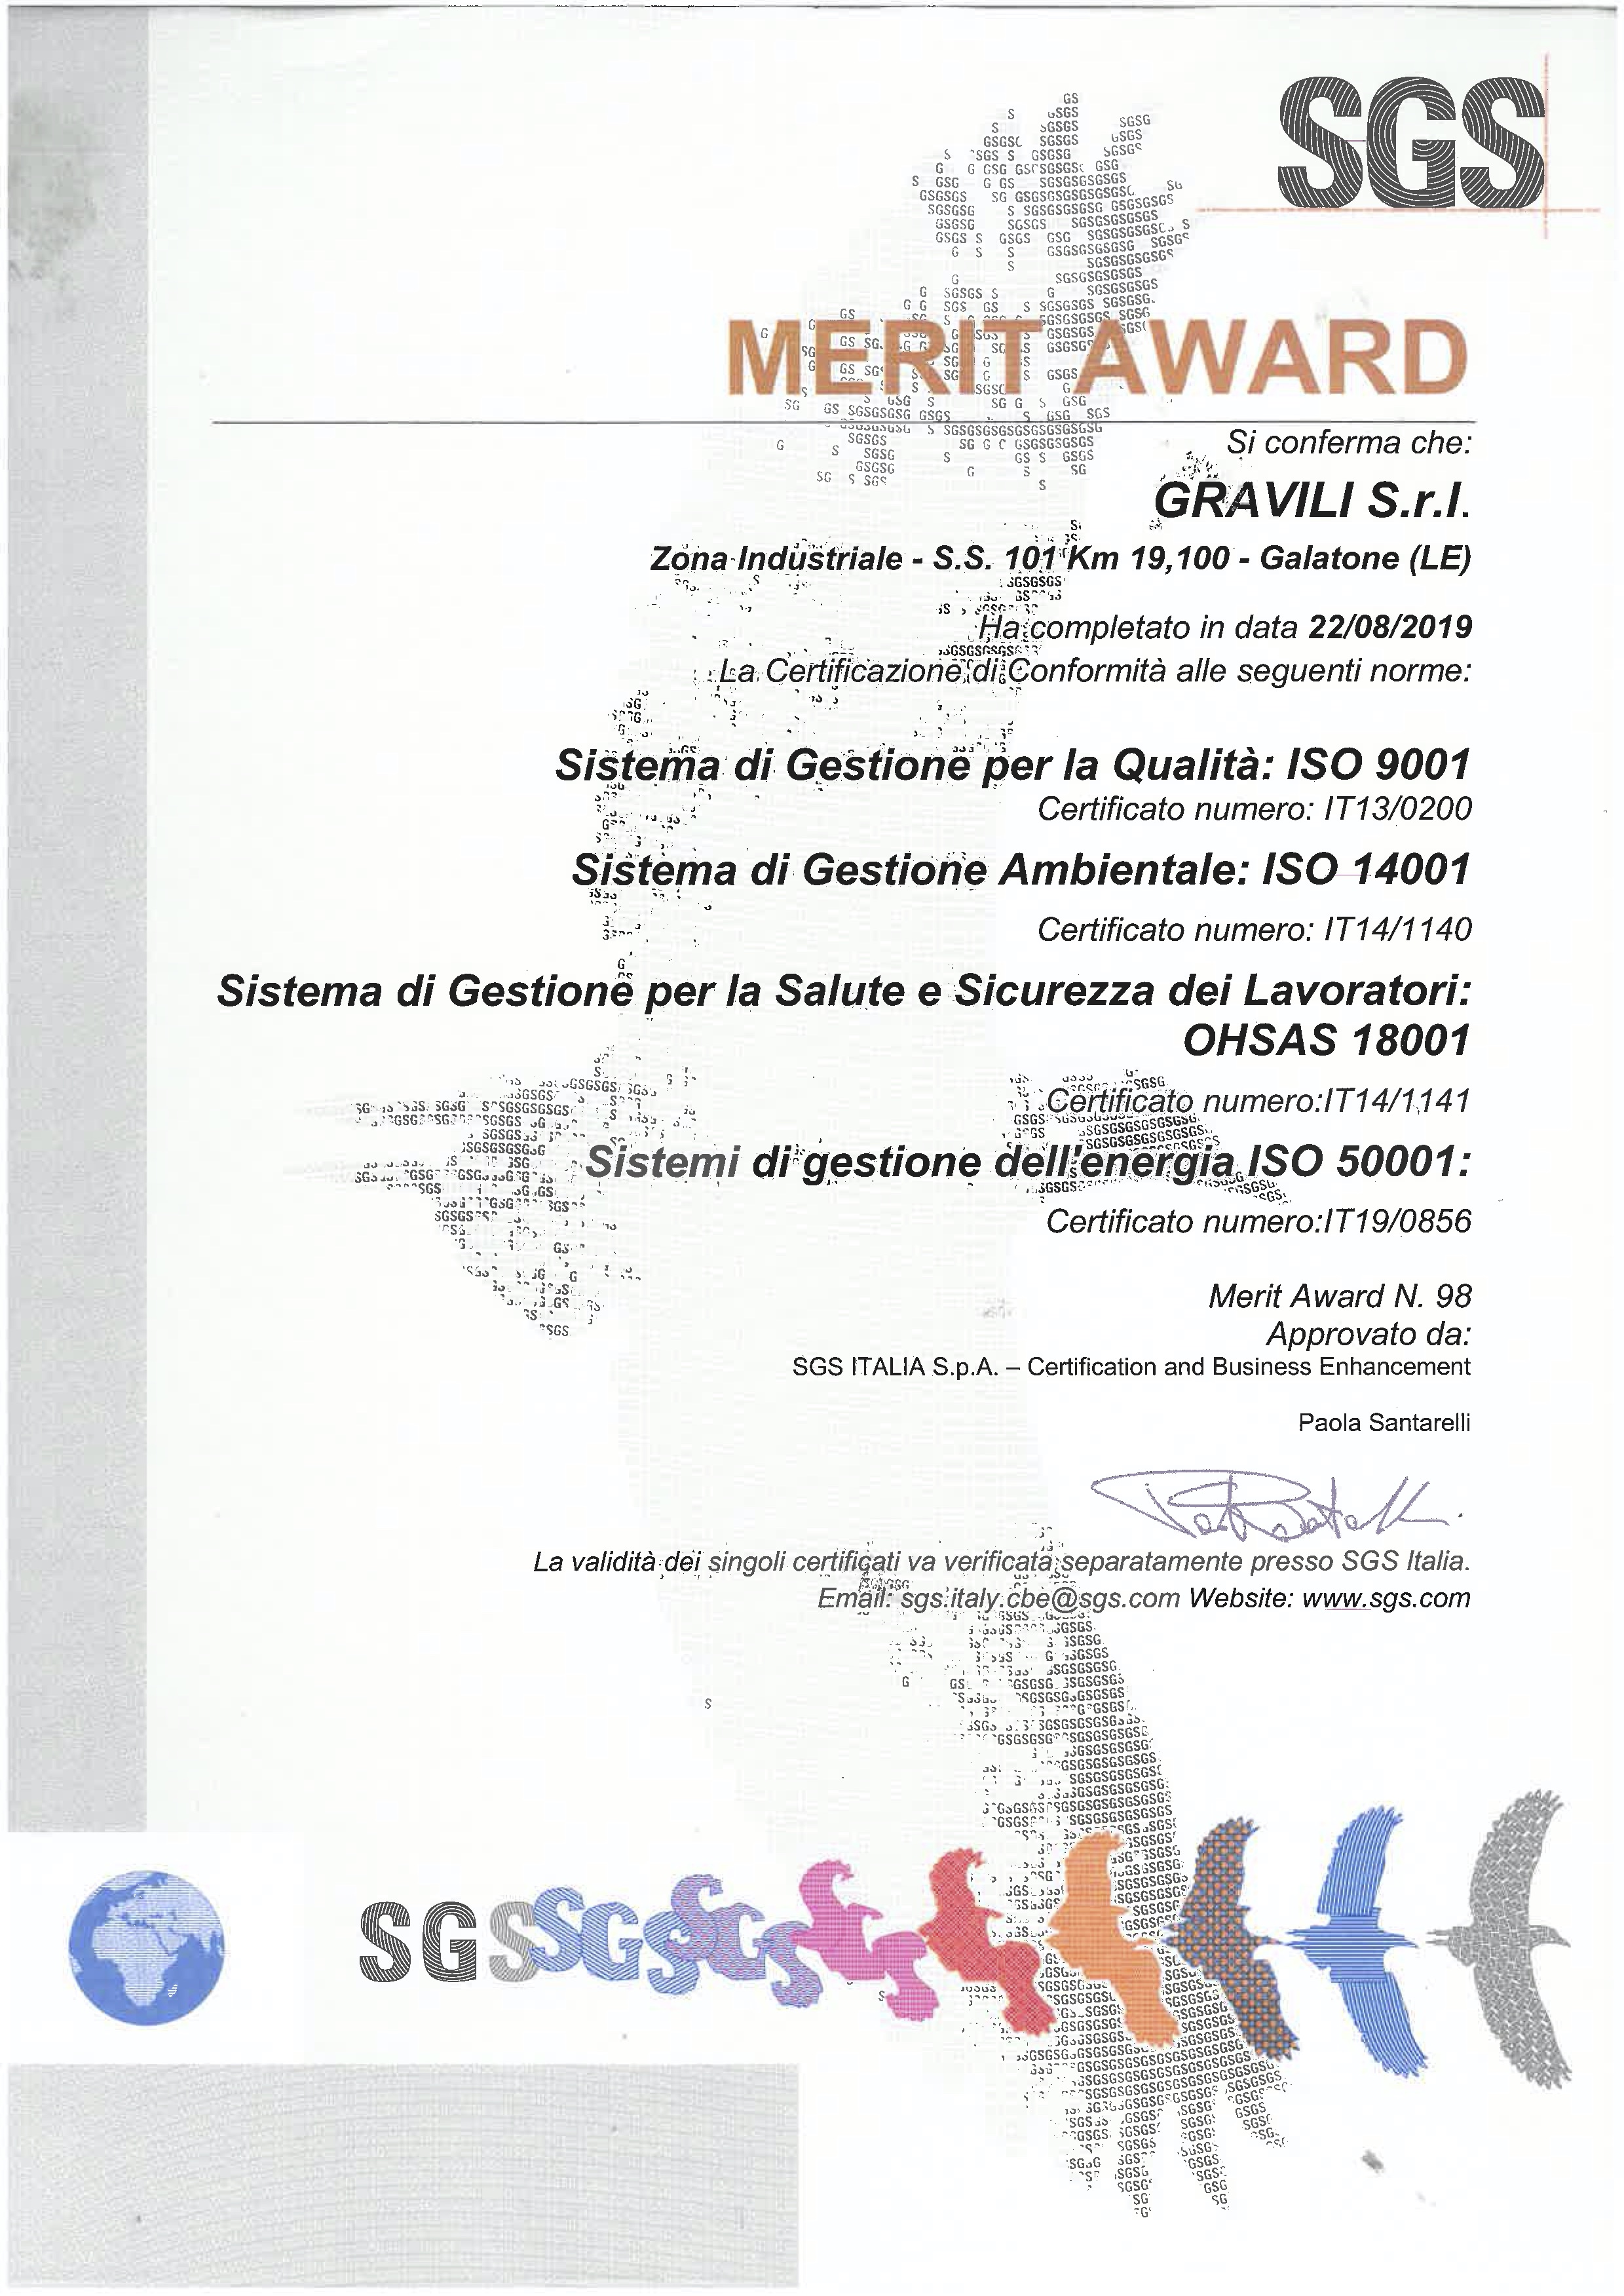 Gravili SGS Merit Award 2020